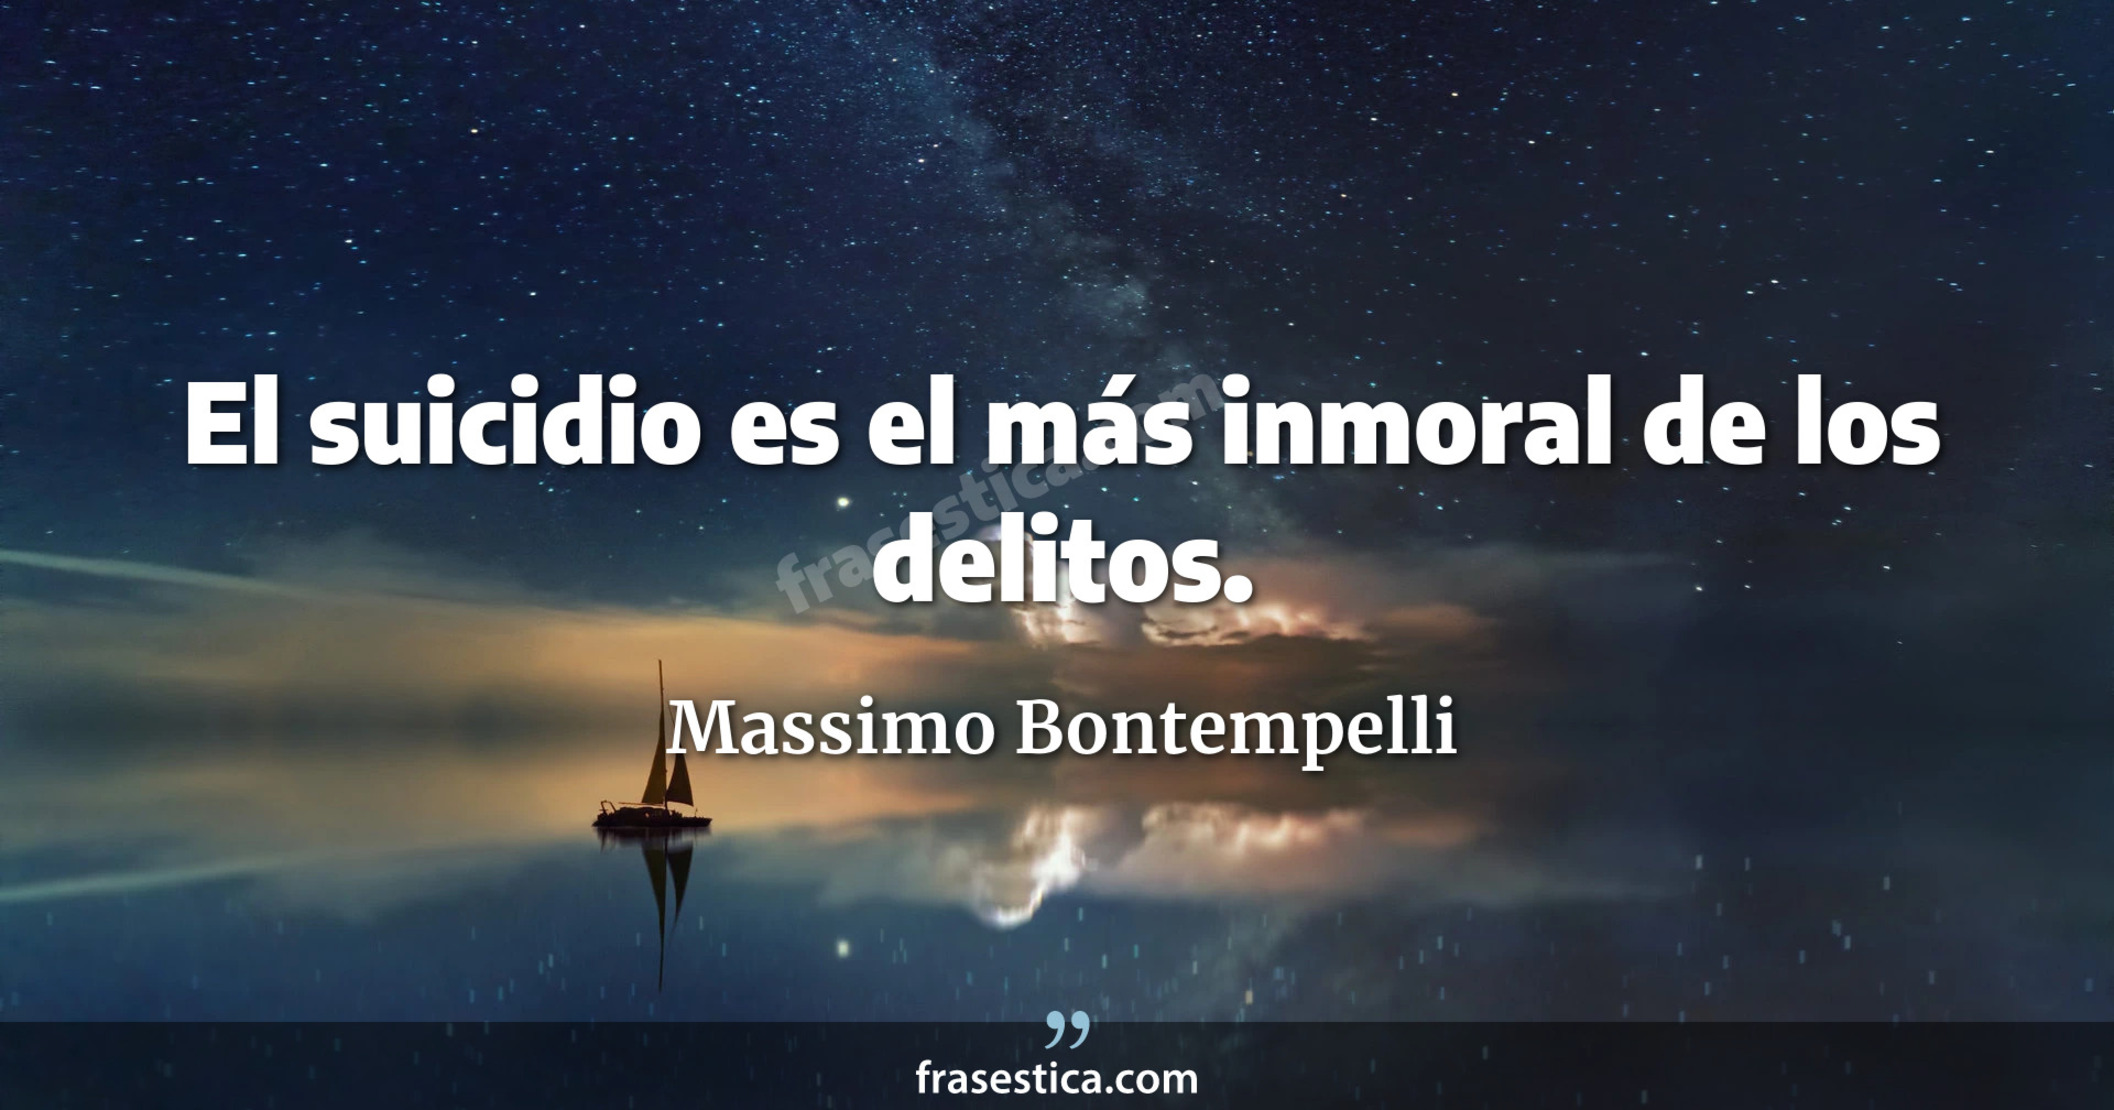 El suicidio es el más inmoral de los delitos. - Massimo Bontempelli